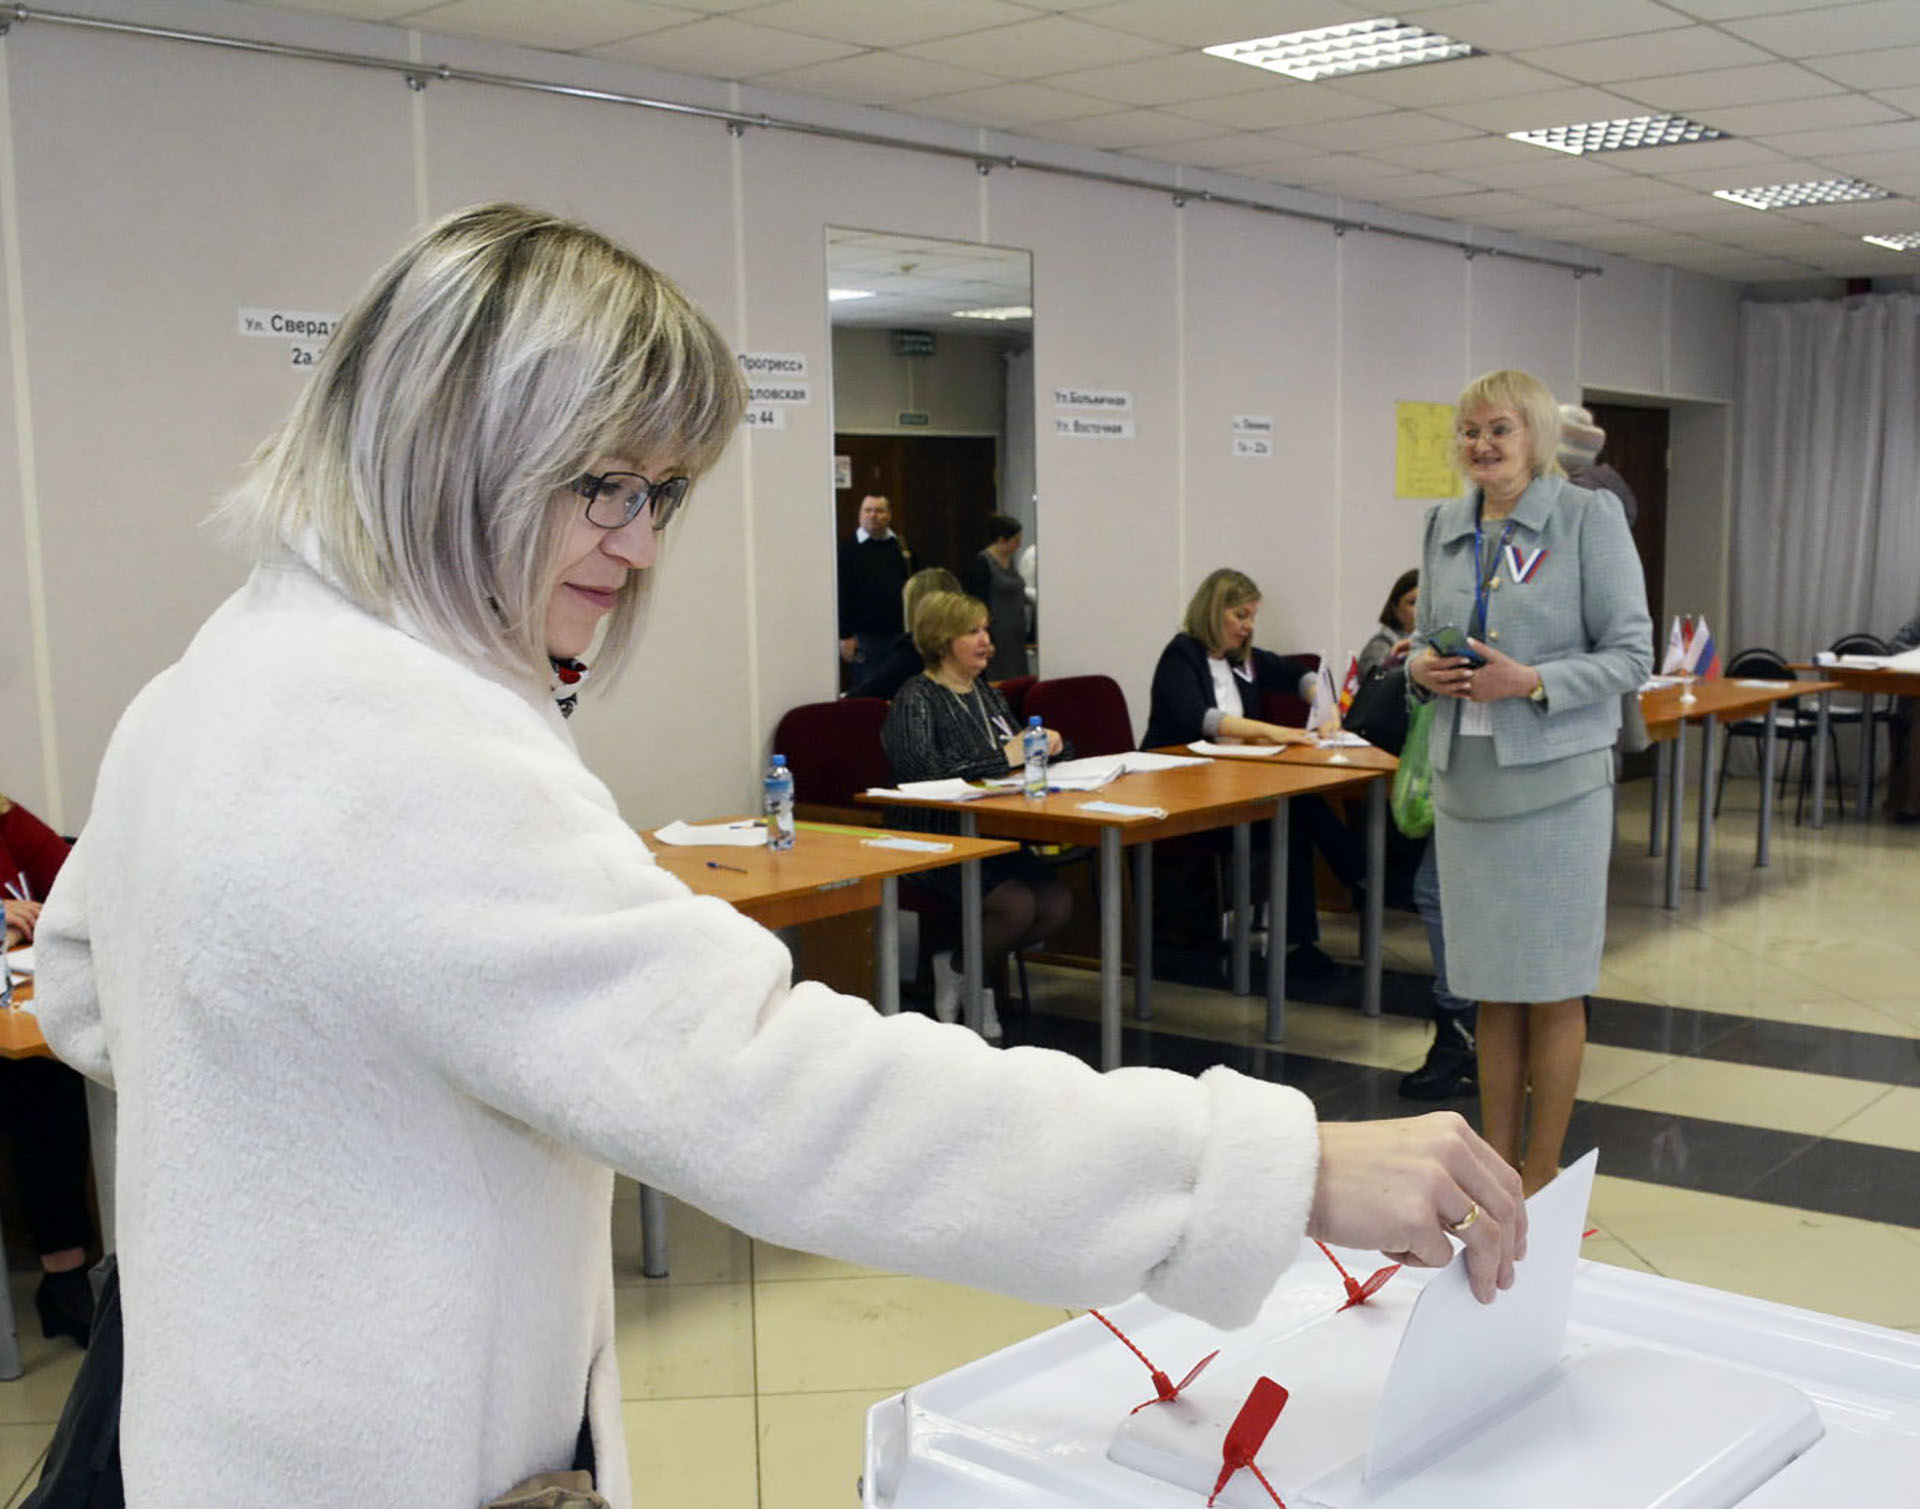 Жители Сосновского района выбирают президента страны